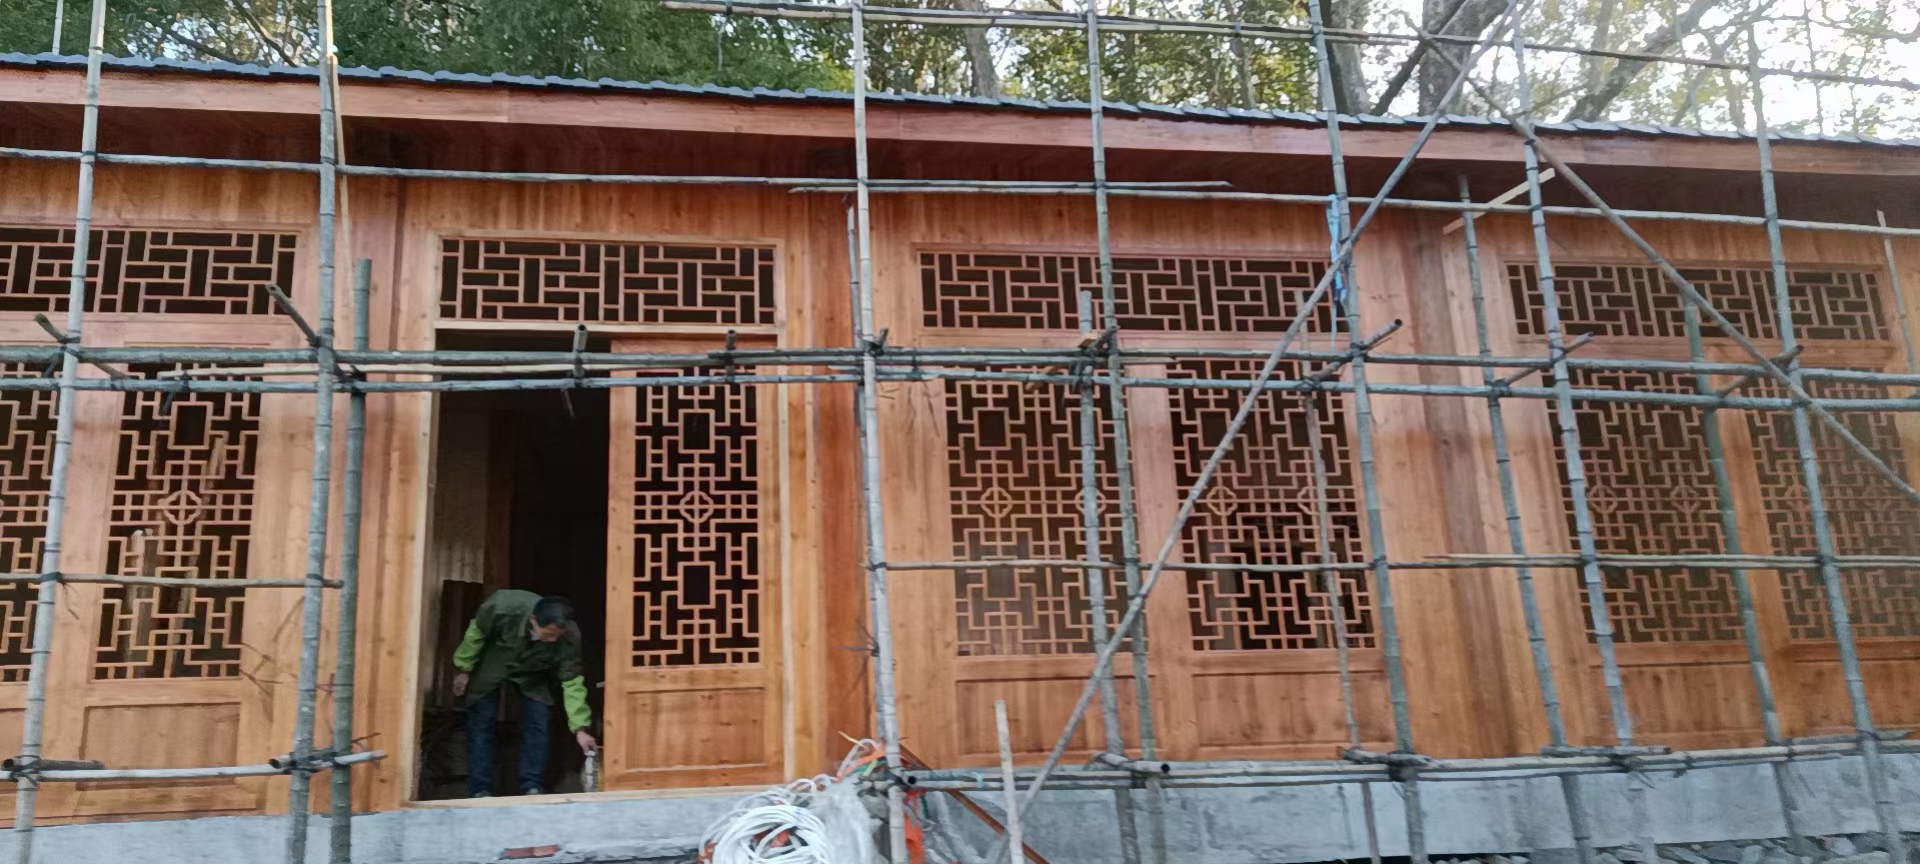 海南柳桉木中式木屋  中式别墅 中式装修木雅  精心制作图片